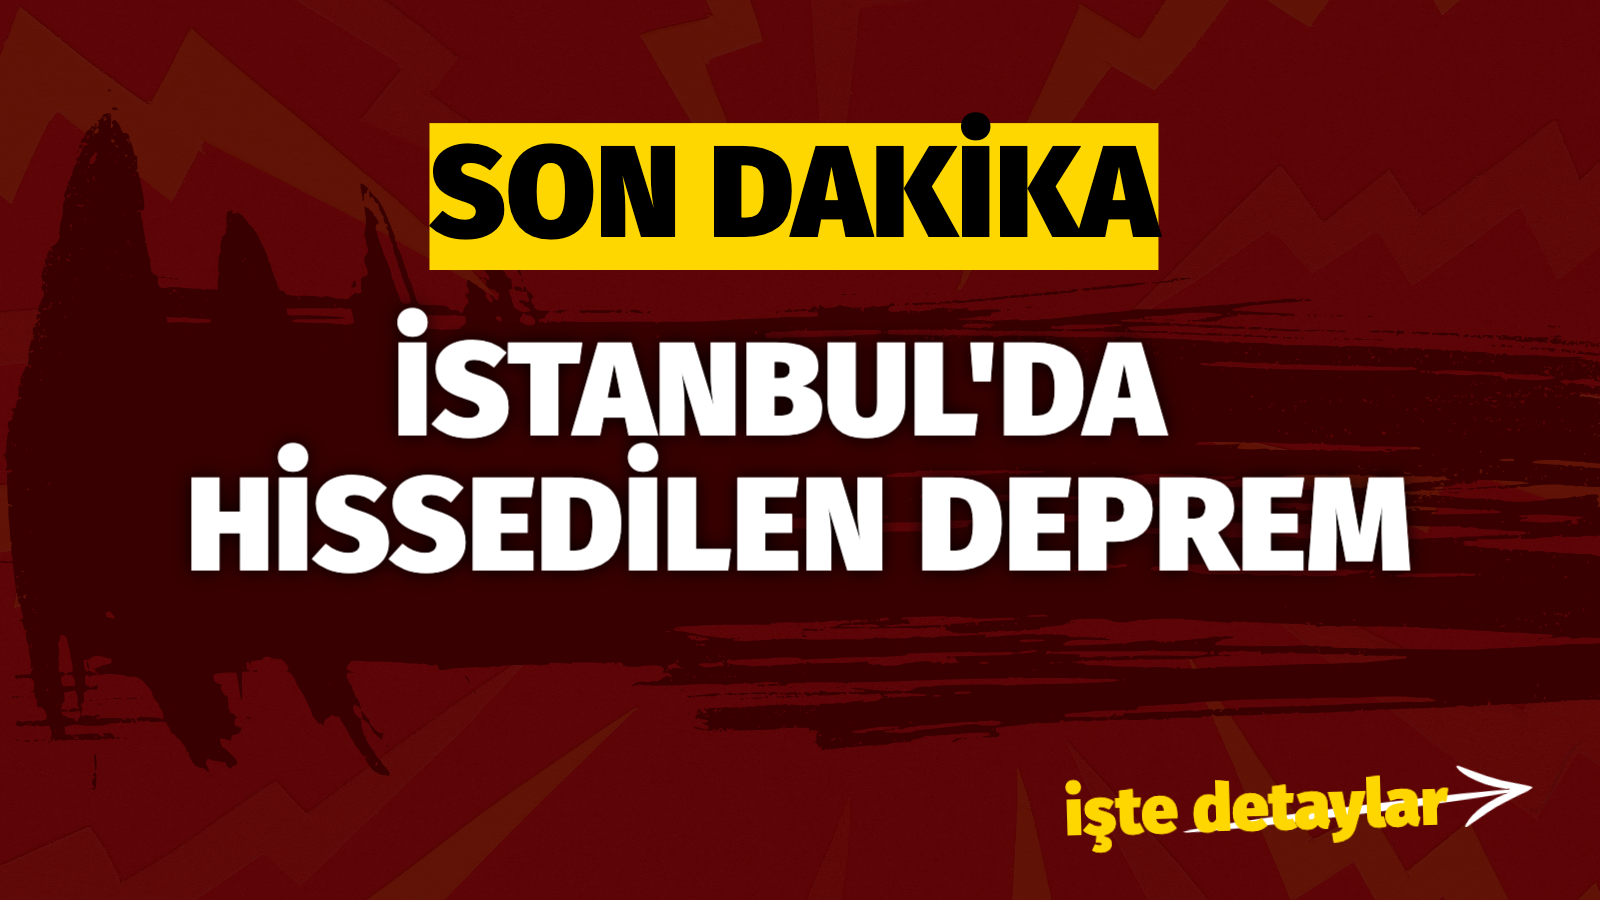 İstanbul’da deprem! Resmi açıklama bekleniyor .